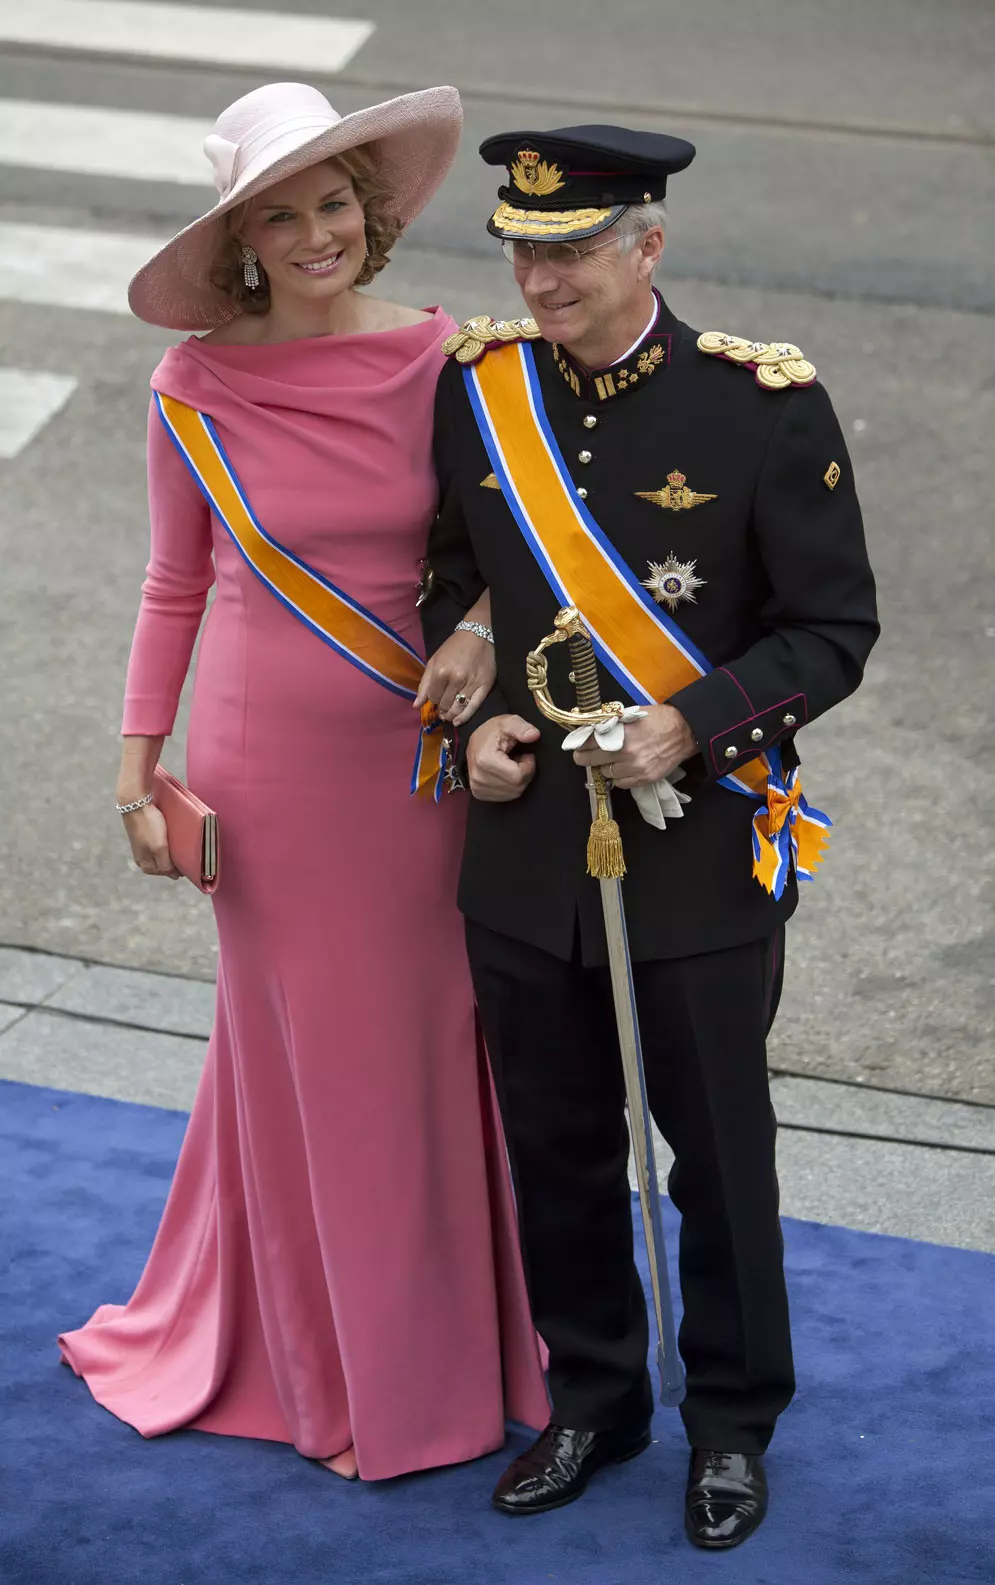 המלך המיועד - הנסיך פיליפ, עם רעייתו הנסיכה מטילדה